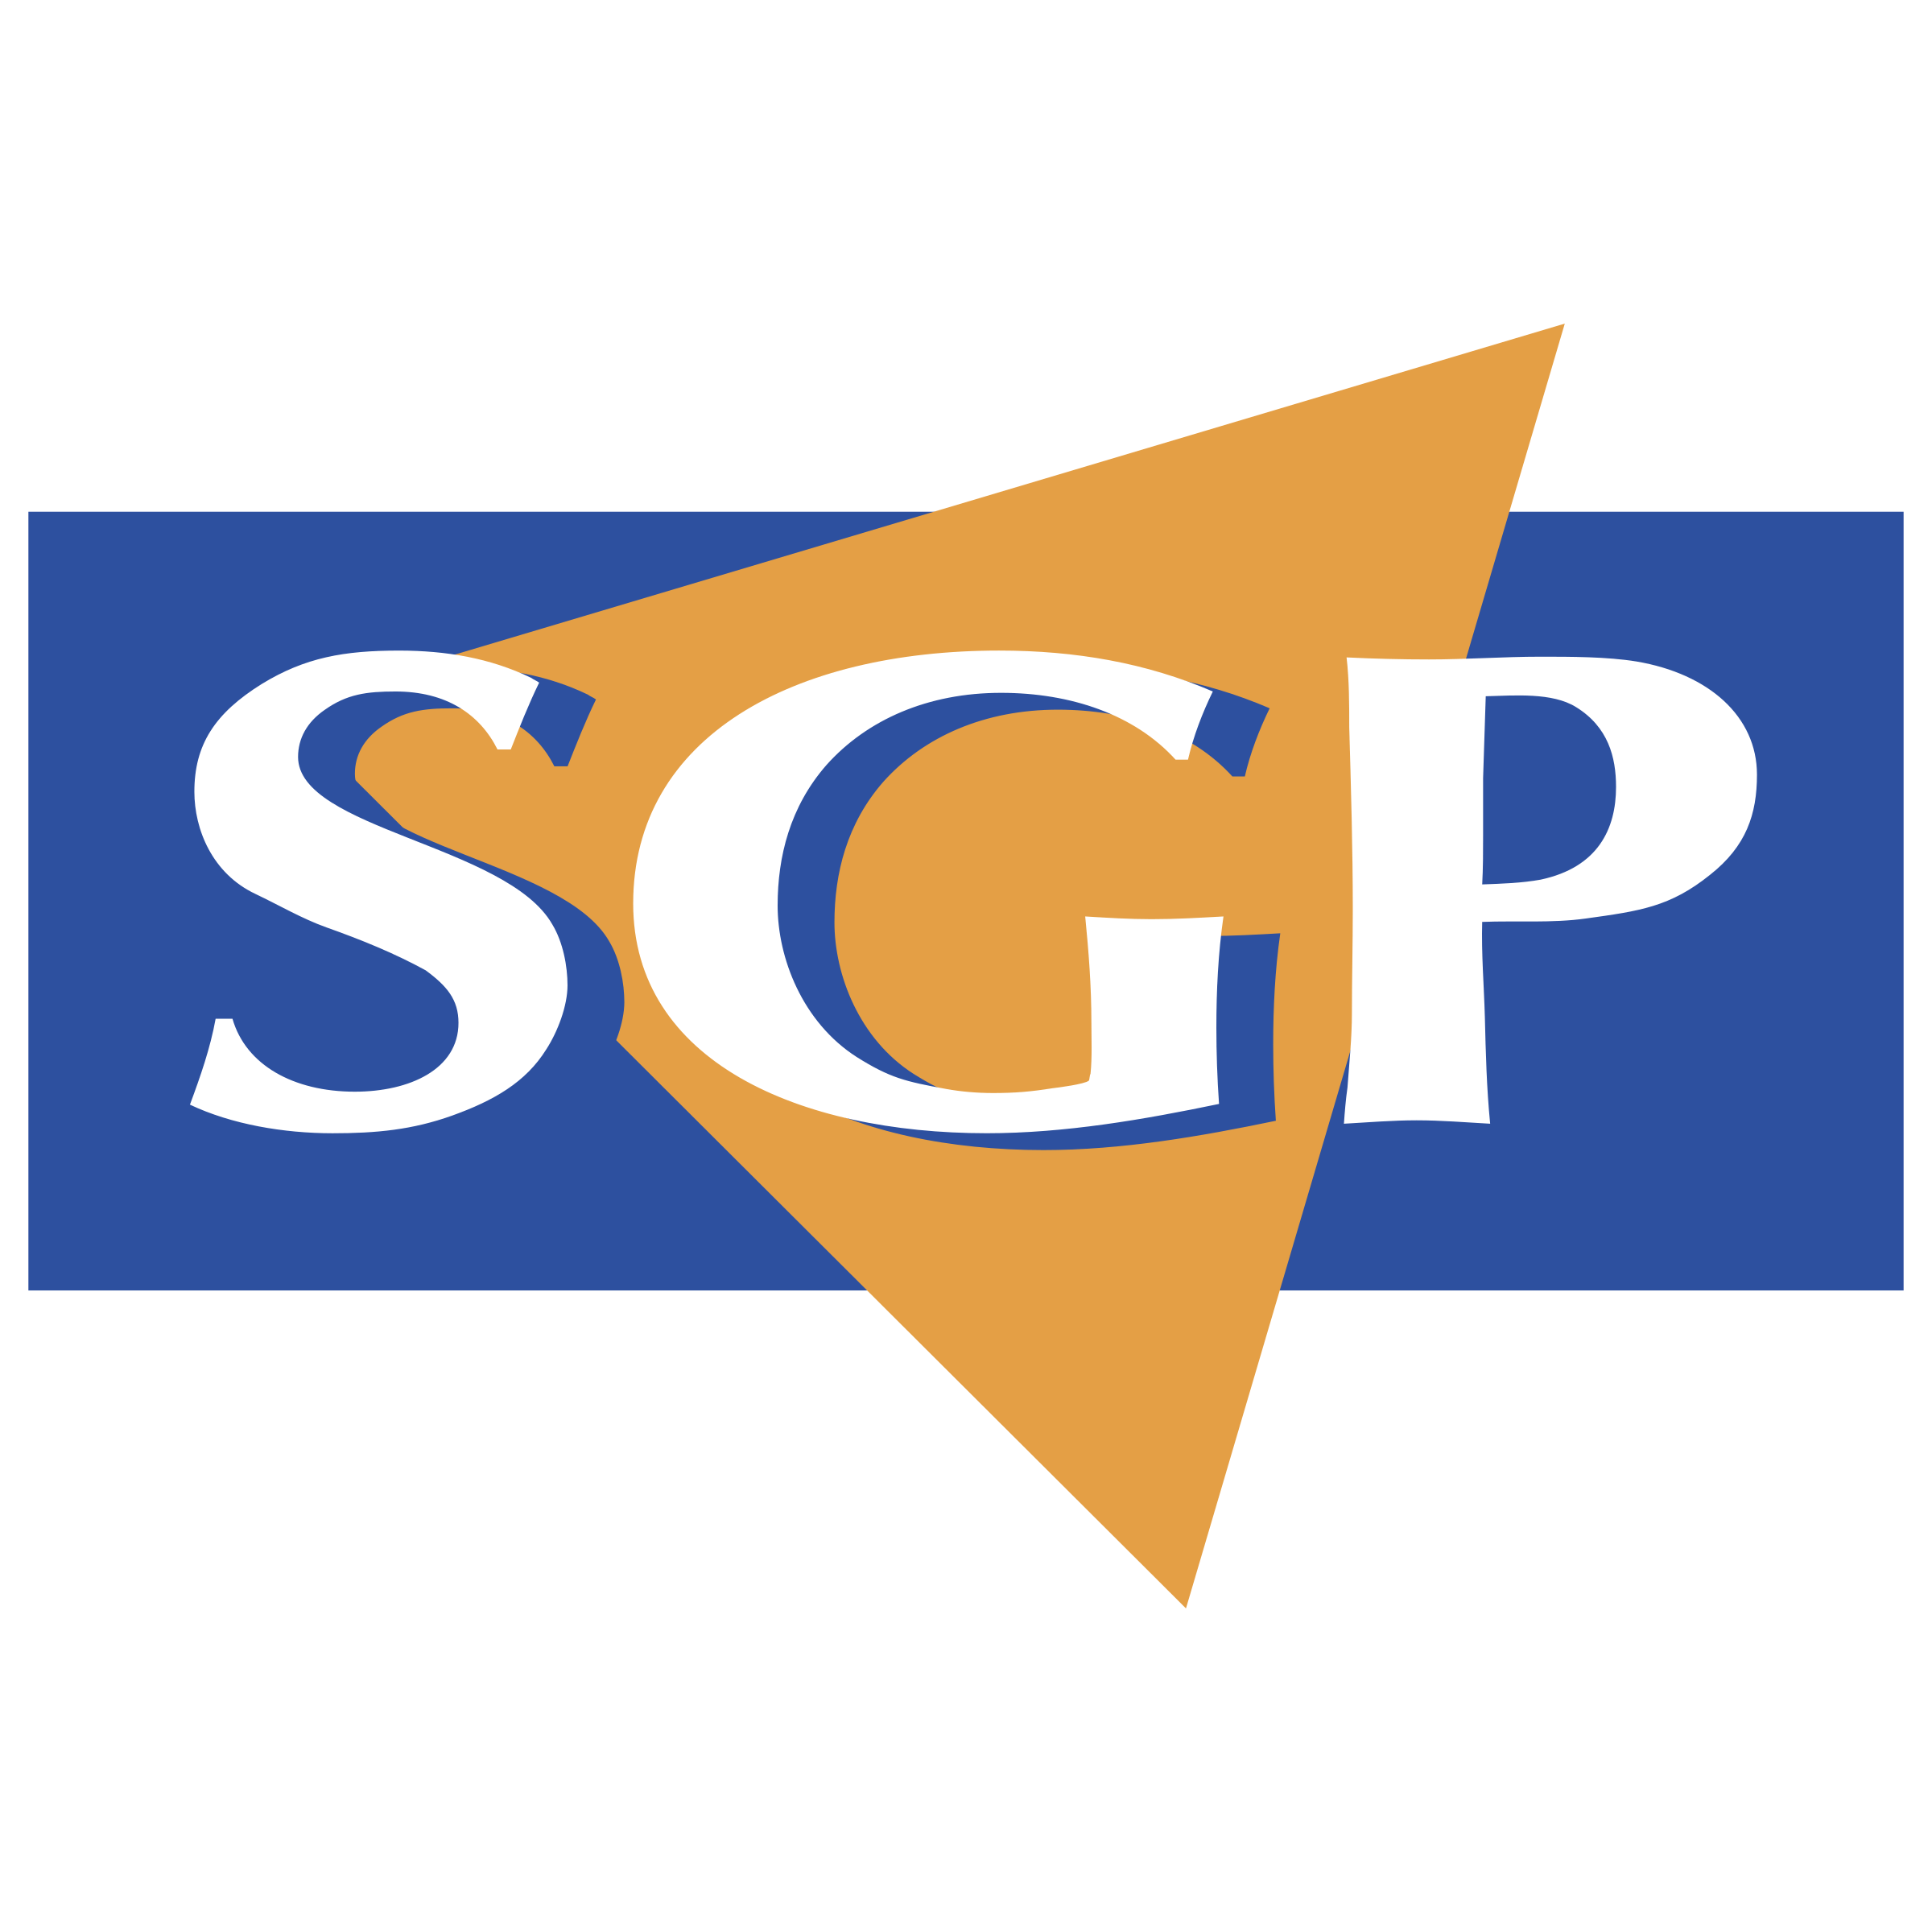 SGP Logo - SGP Logo PNG Transparent & SVG Vector